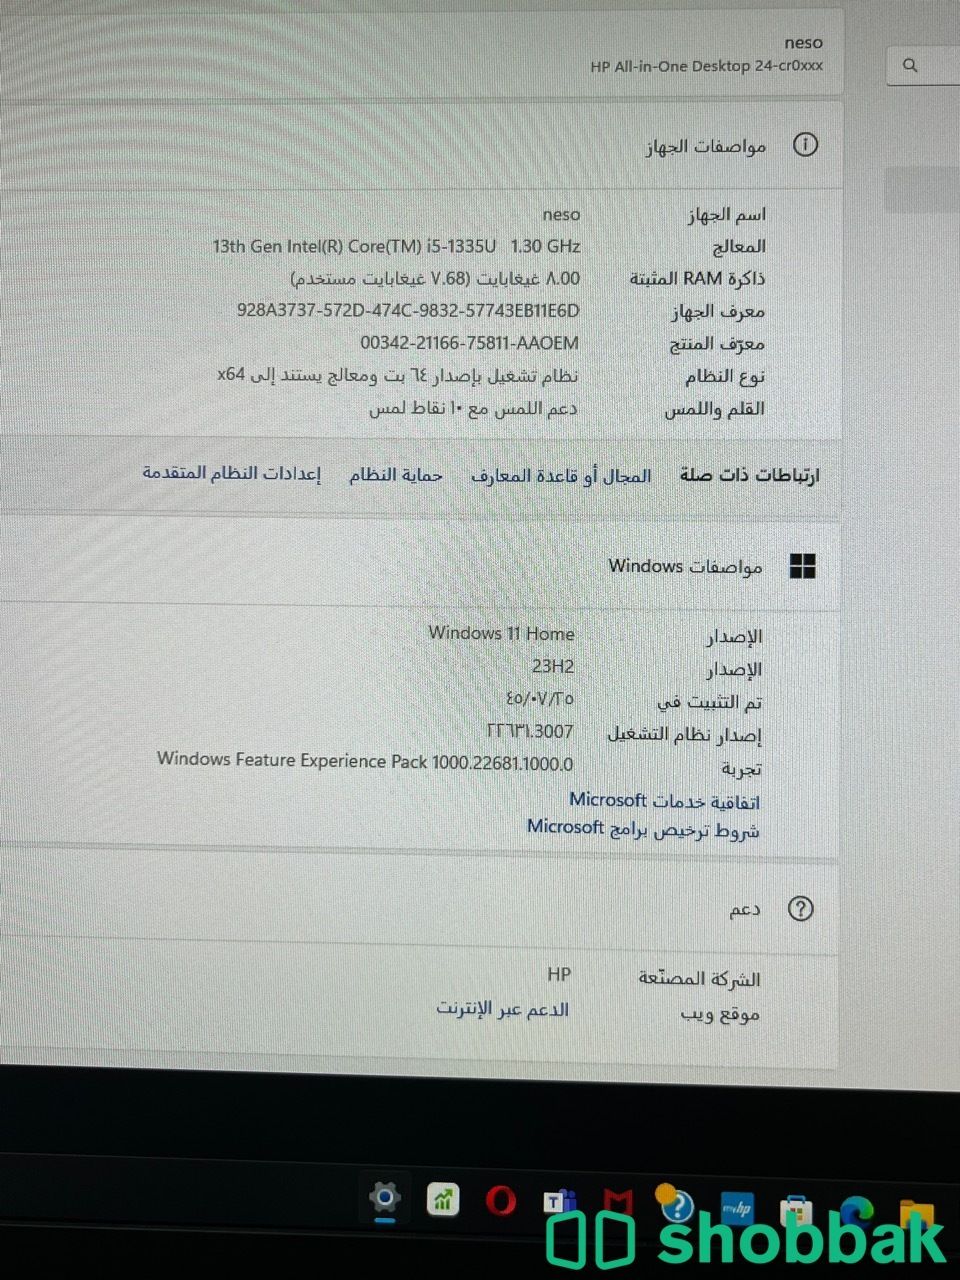 كمبيوتر HP الكل في واحد Shobbak Saudi Arabia